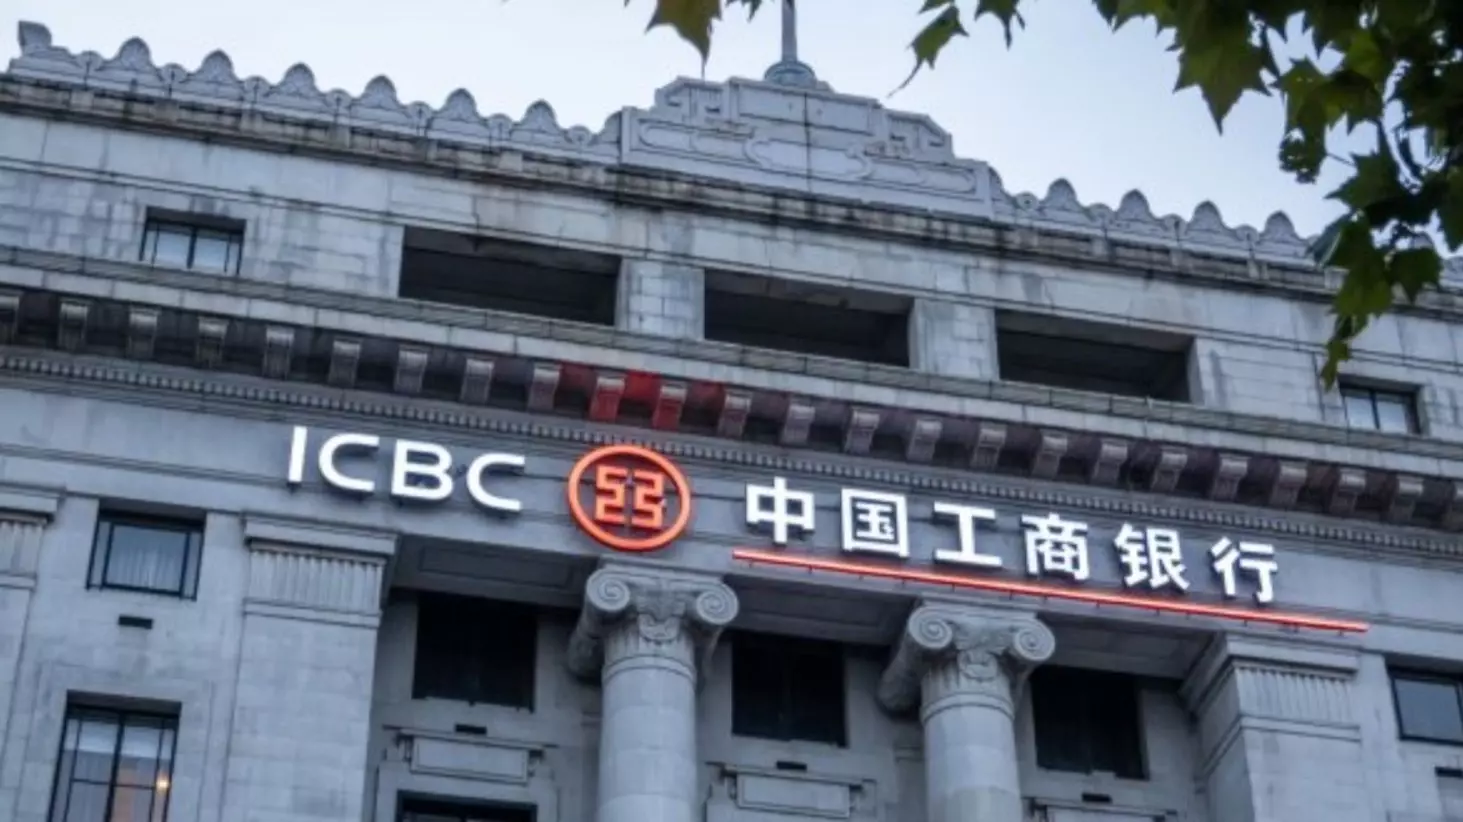 Китайский IBC банк считается самым крупным в стране